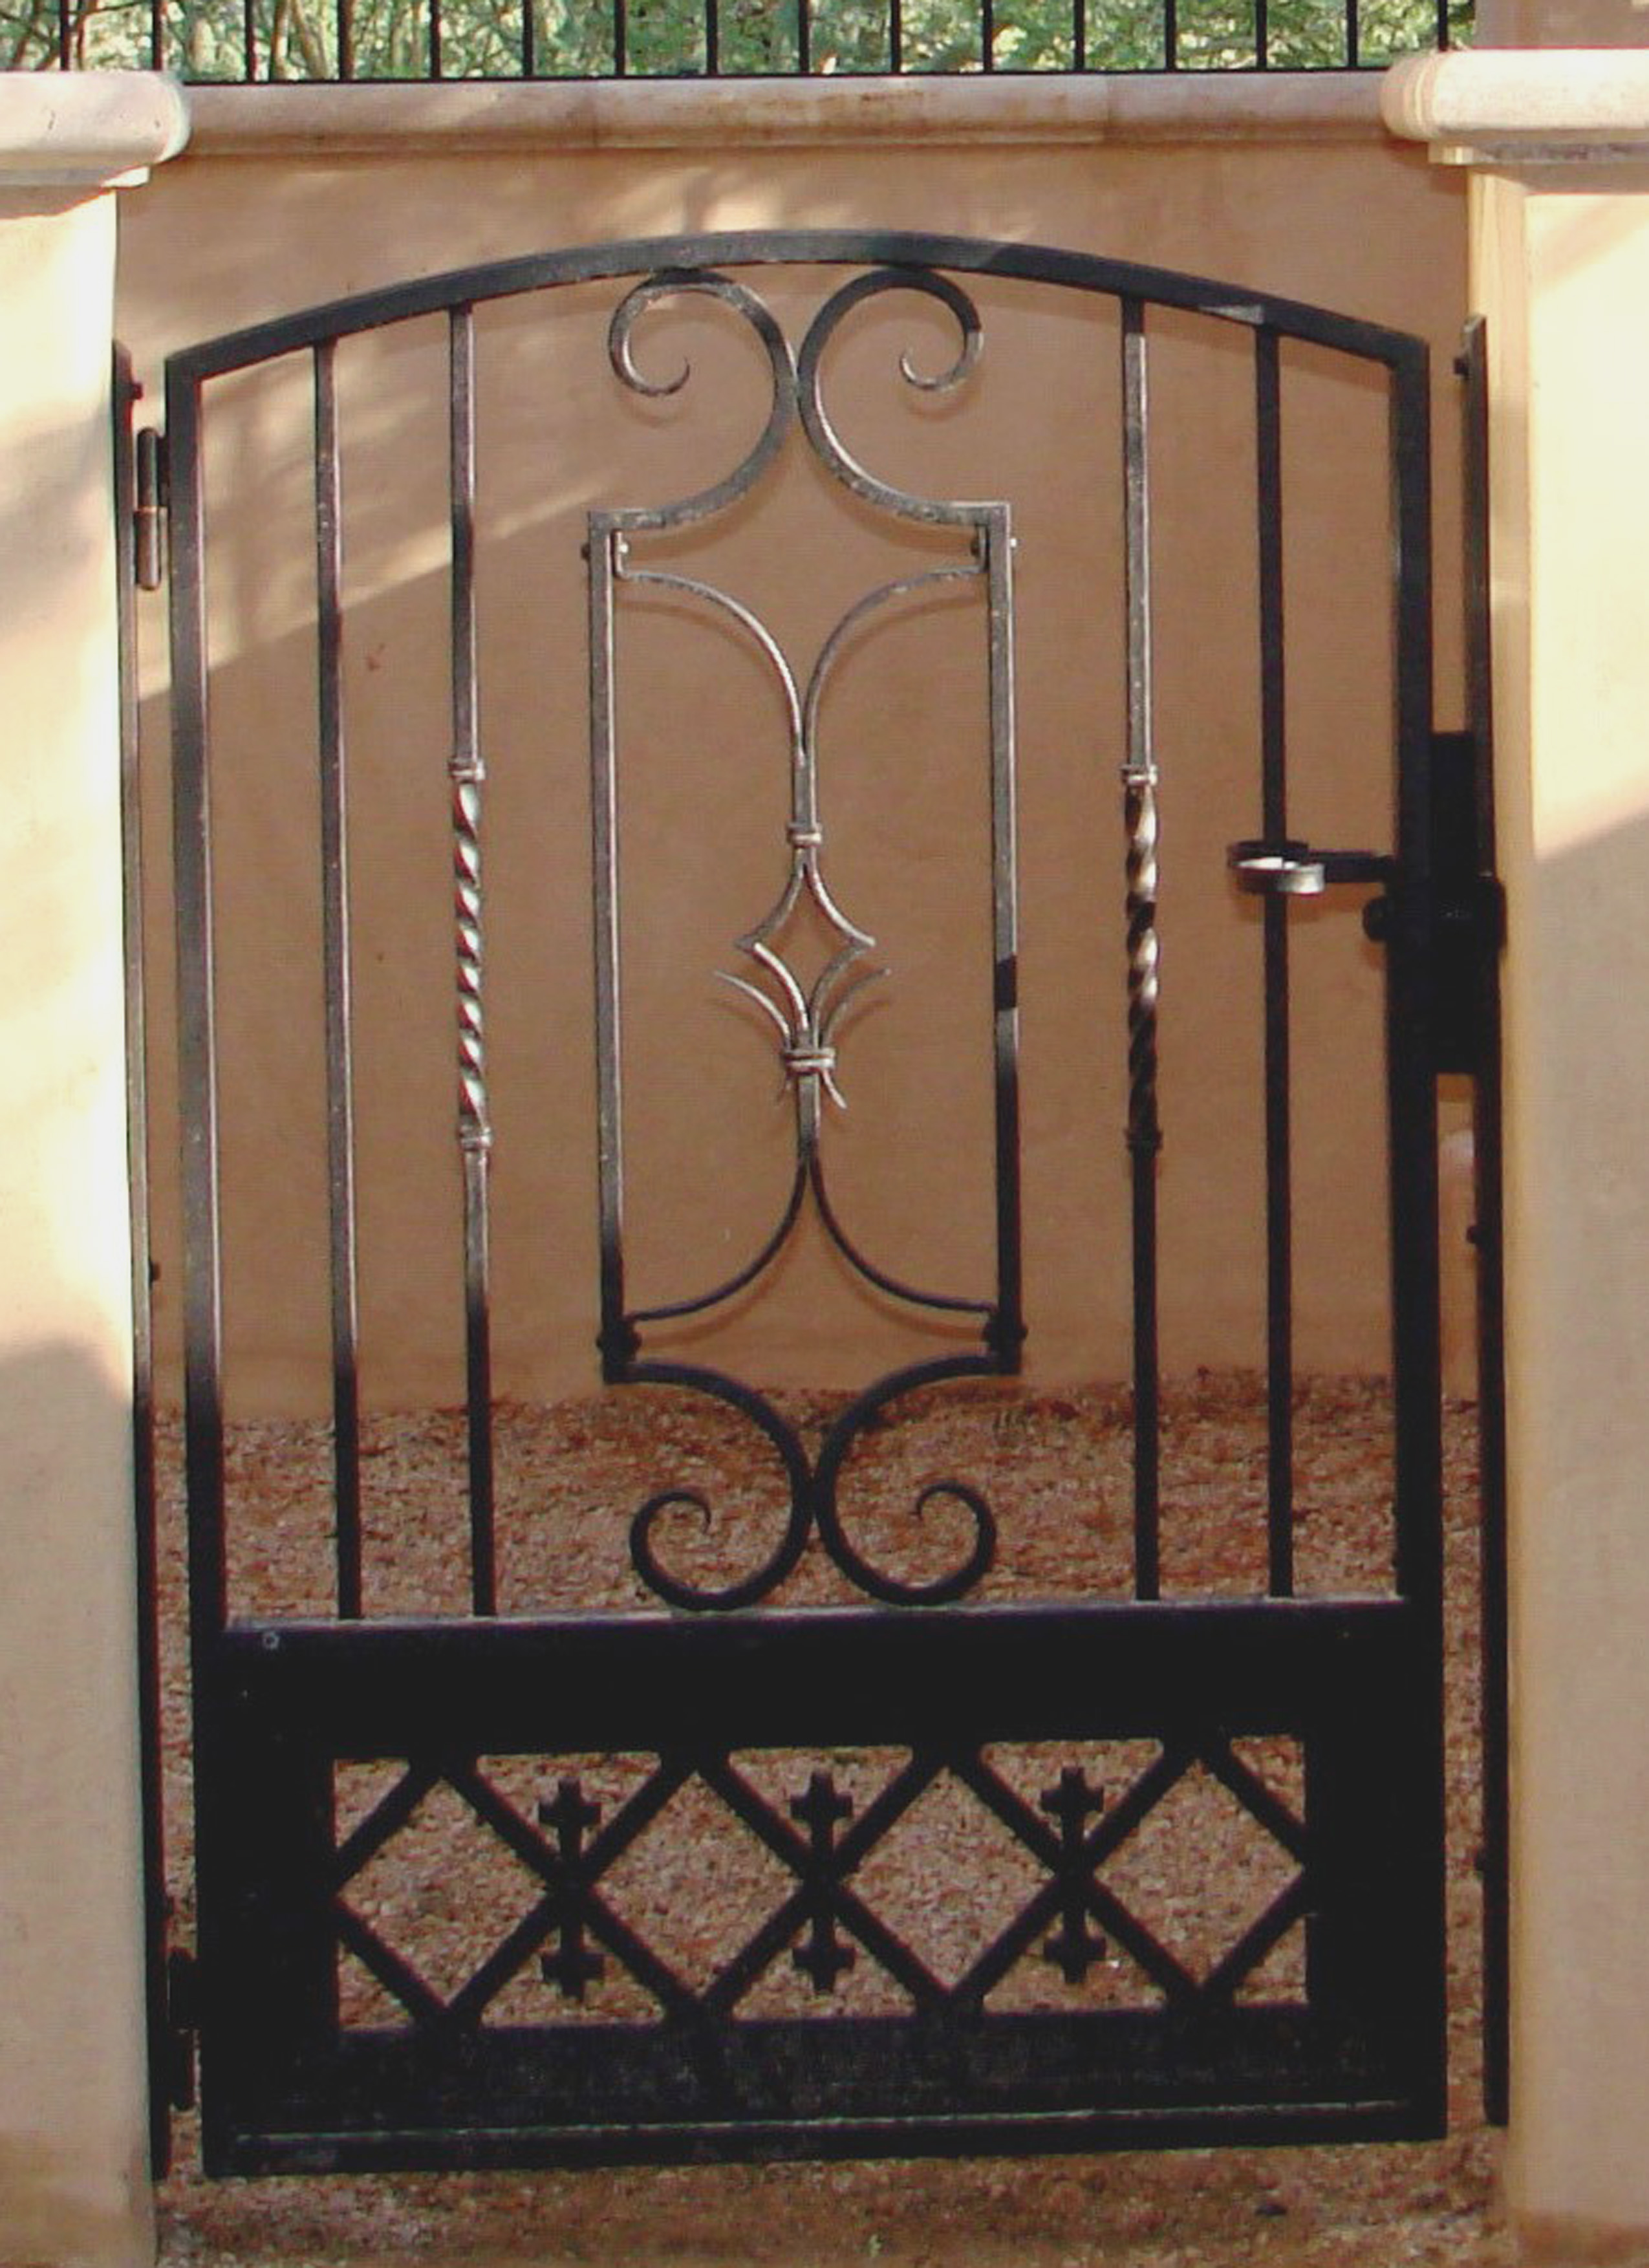 1 of 5 hand forged walk gate. Powder coated finish. Scottsdale Az.